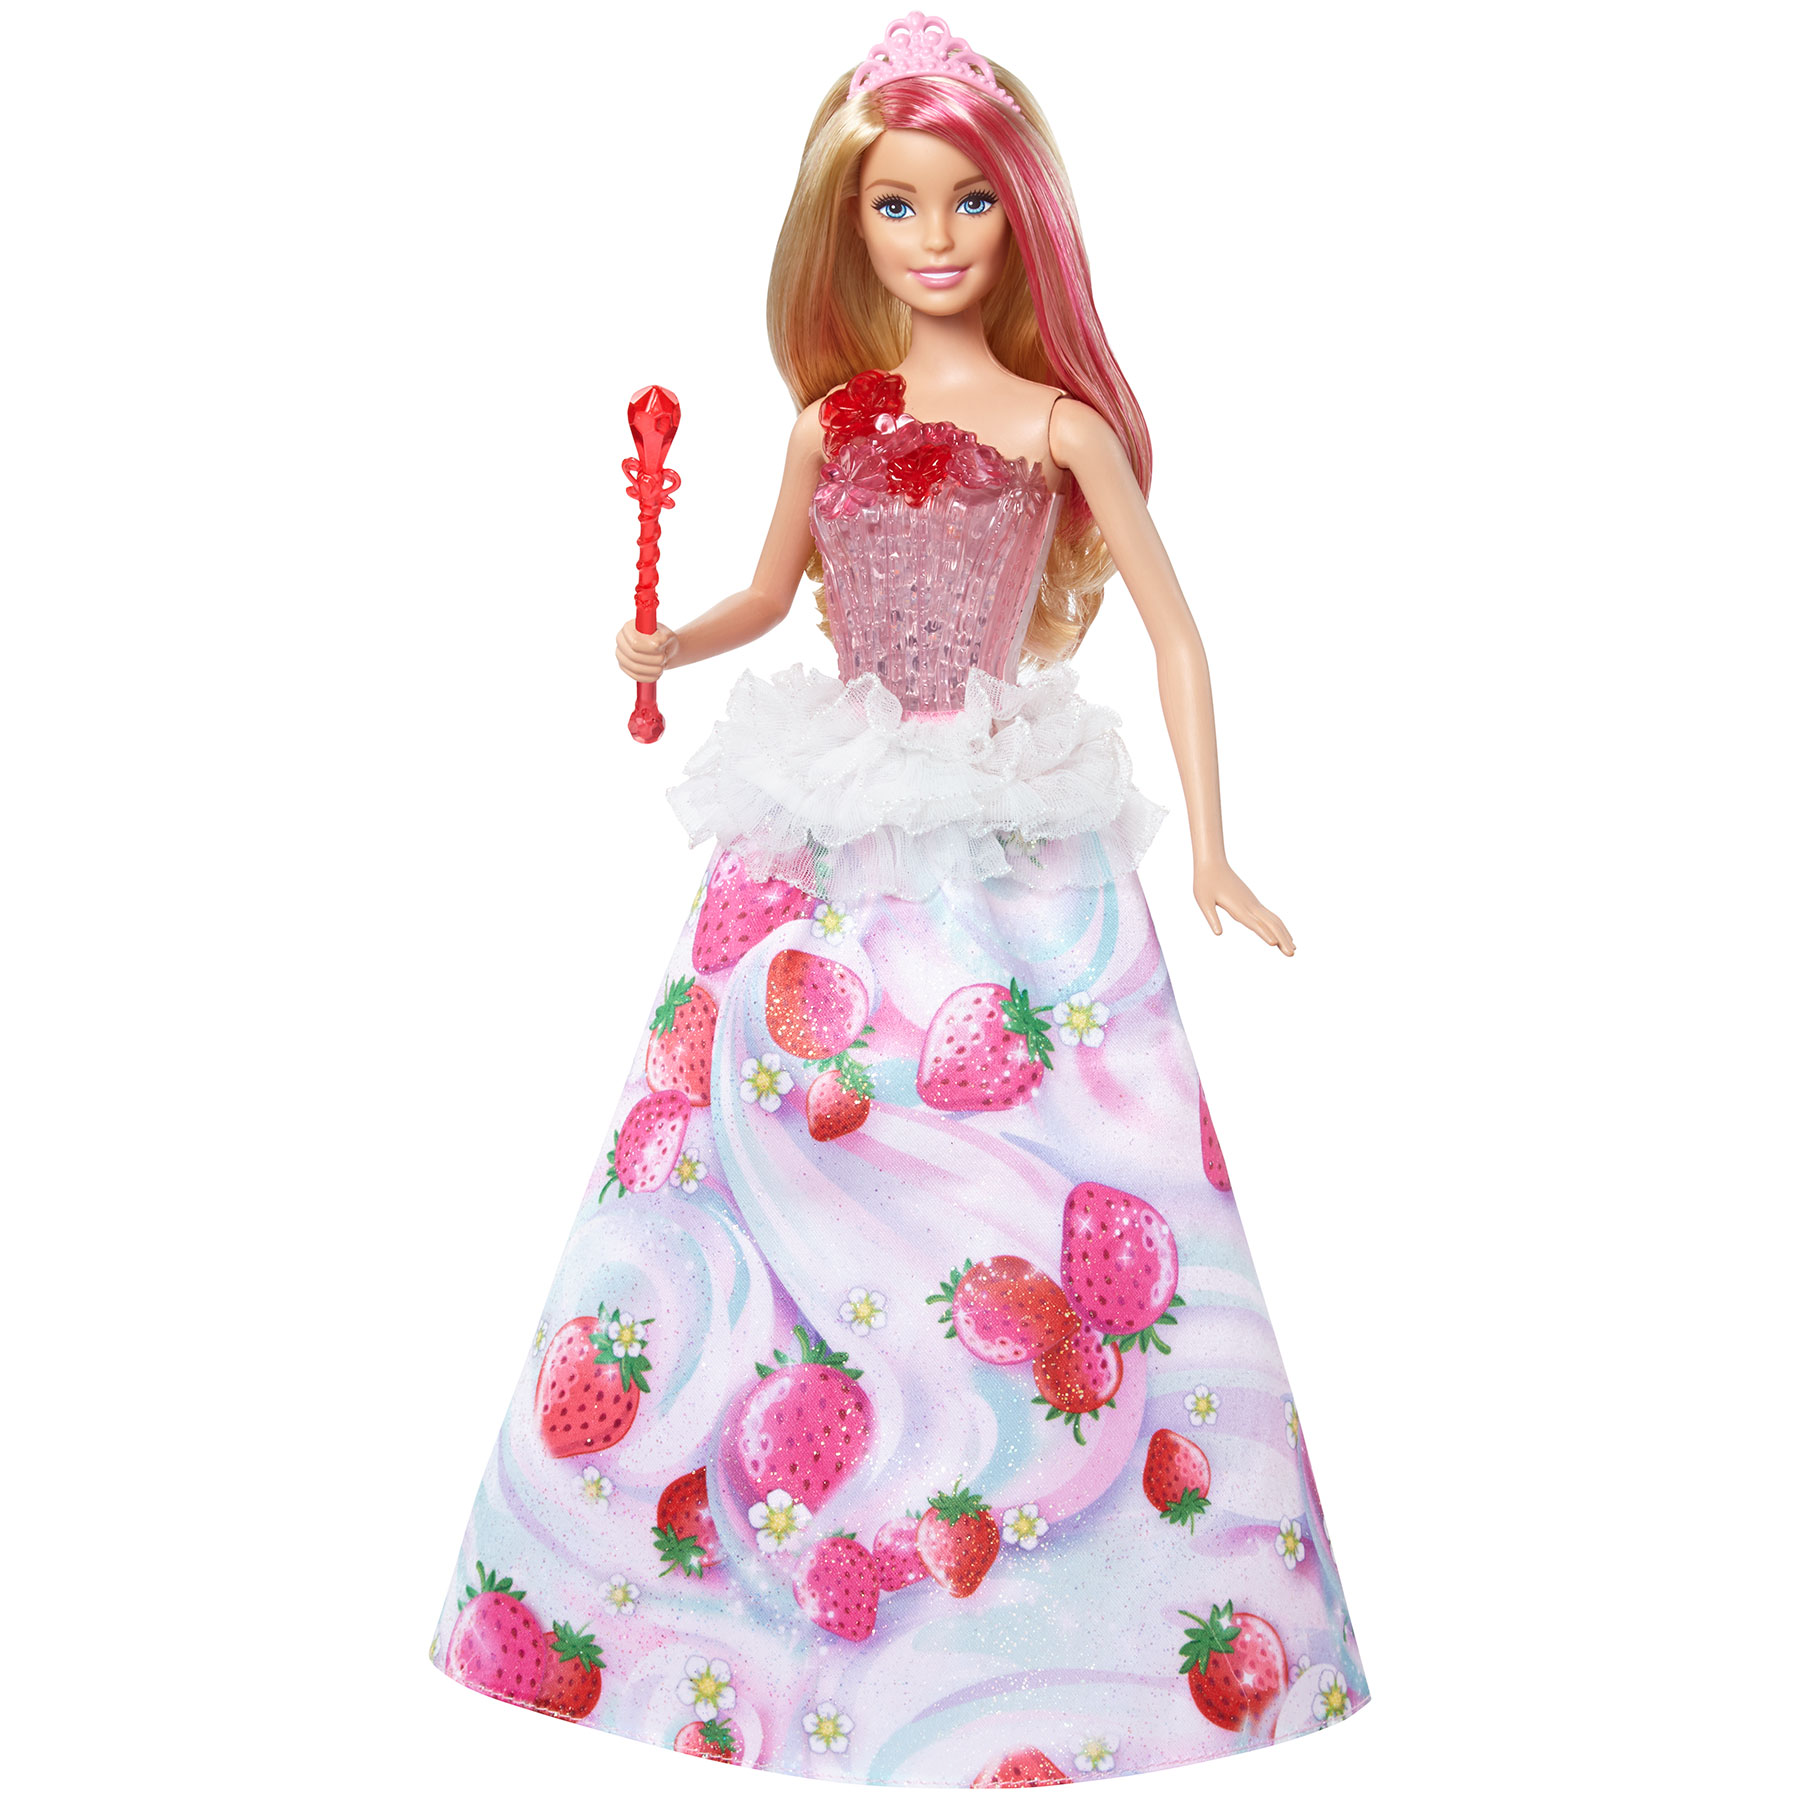 Игрушка барби купить. Кукла Барби принцесса Дримтопия. Кукла Барби Дримтопия конфетная принцесса. Большая кукла Барби Дримтопия. Игрушка Barbie конфетная принцесса.